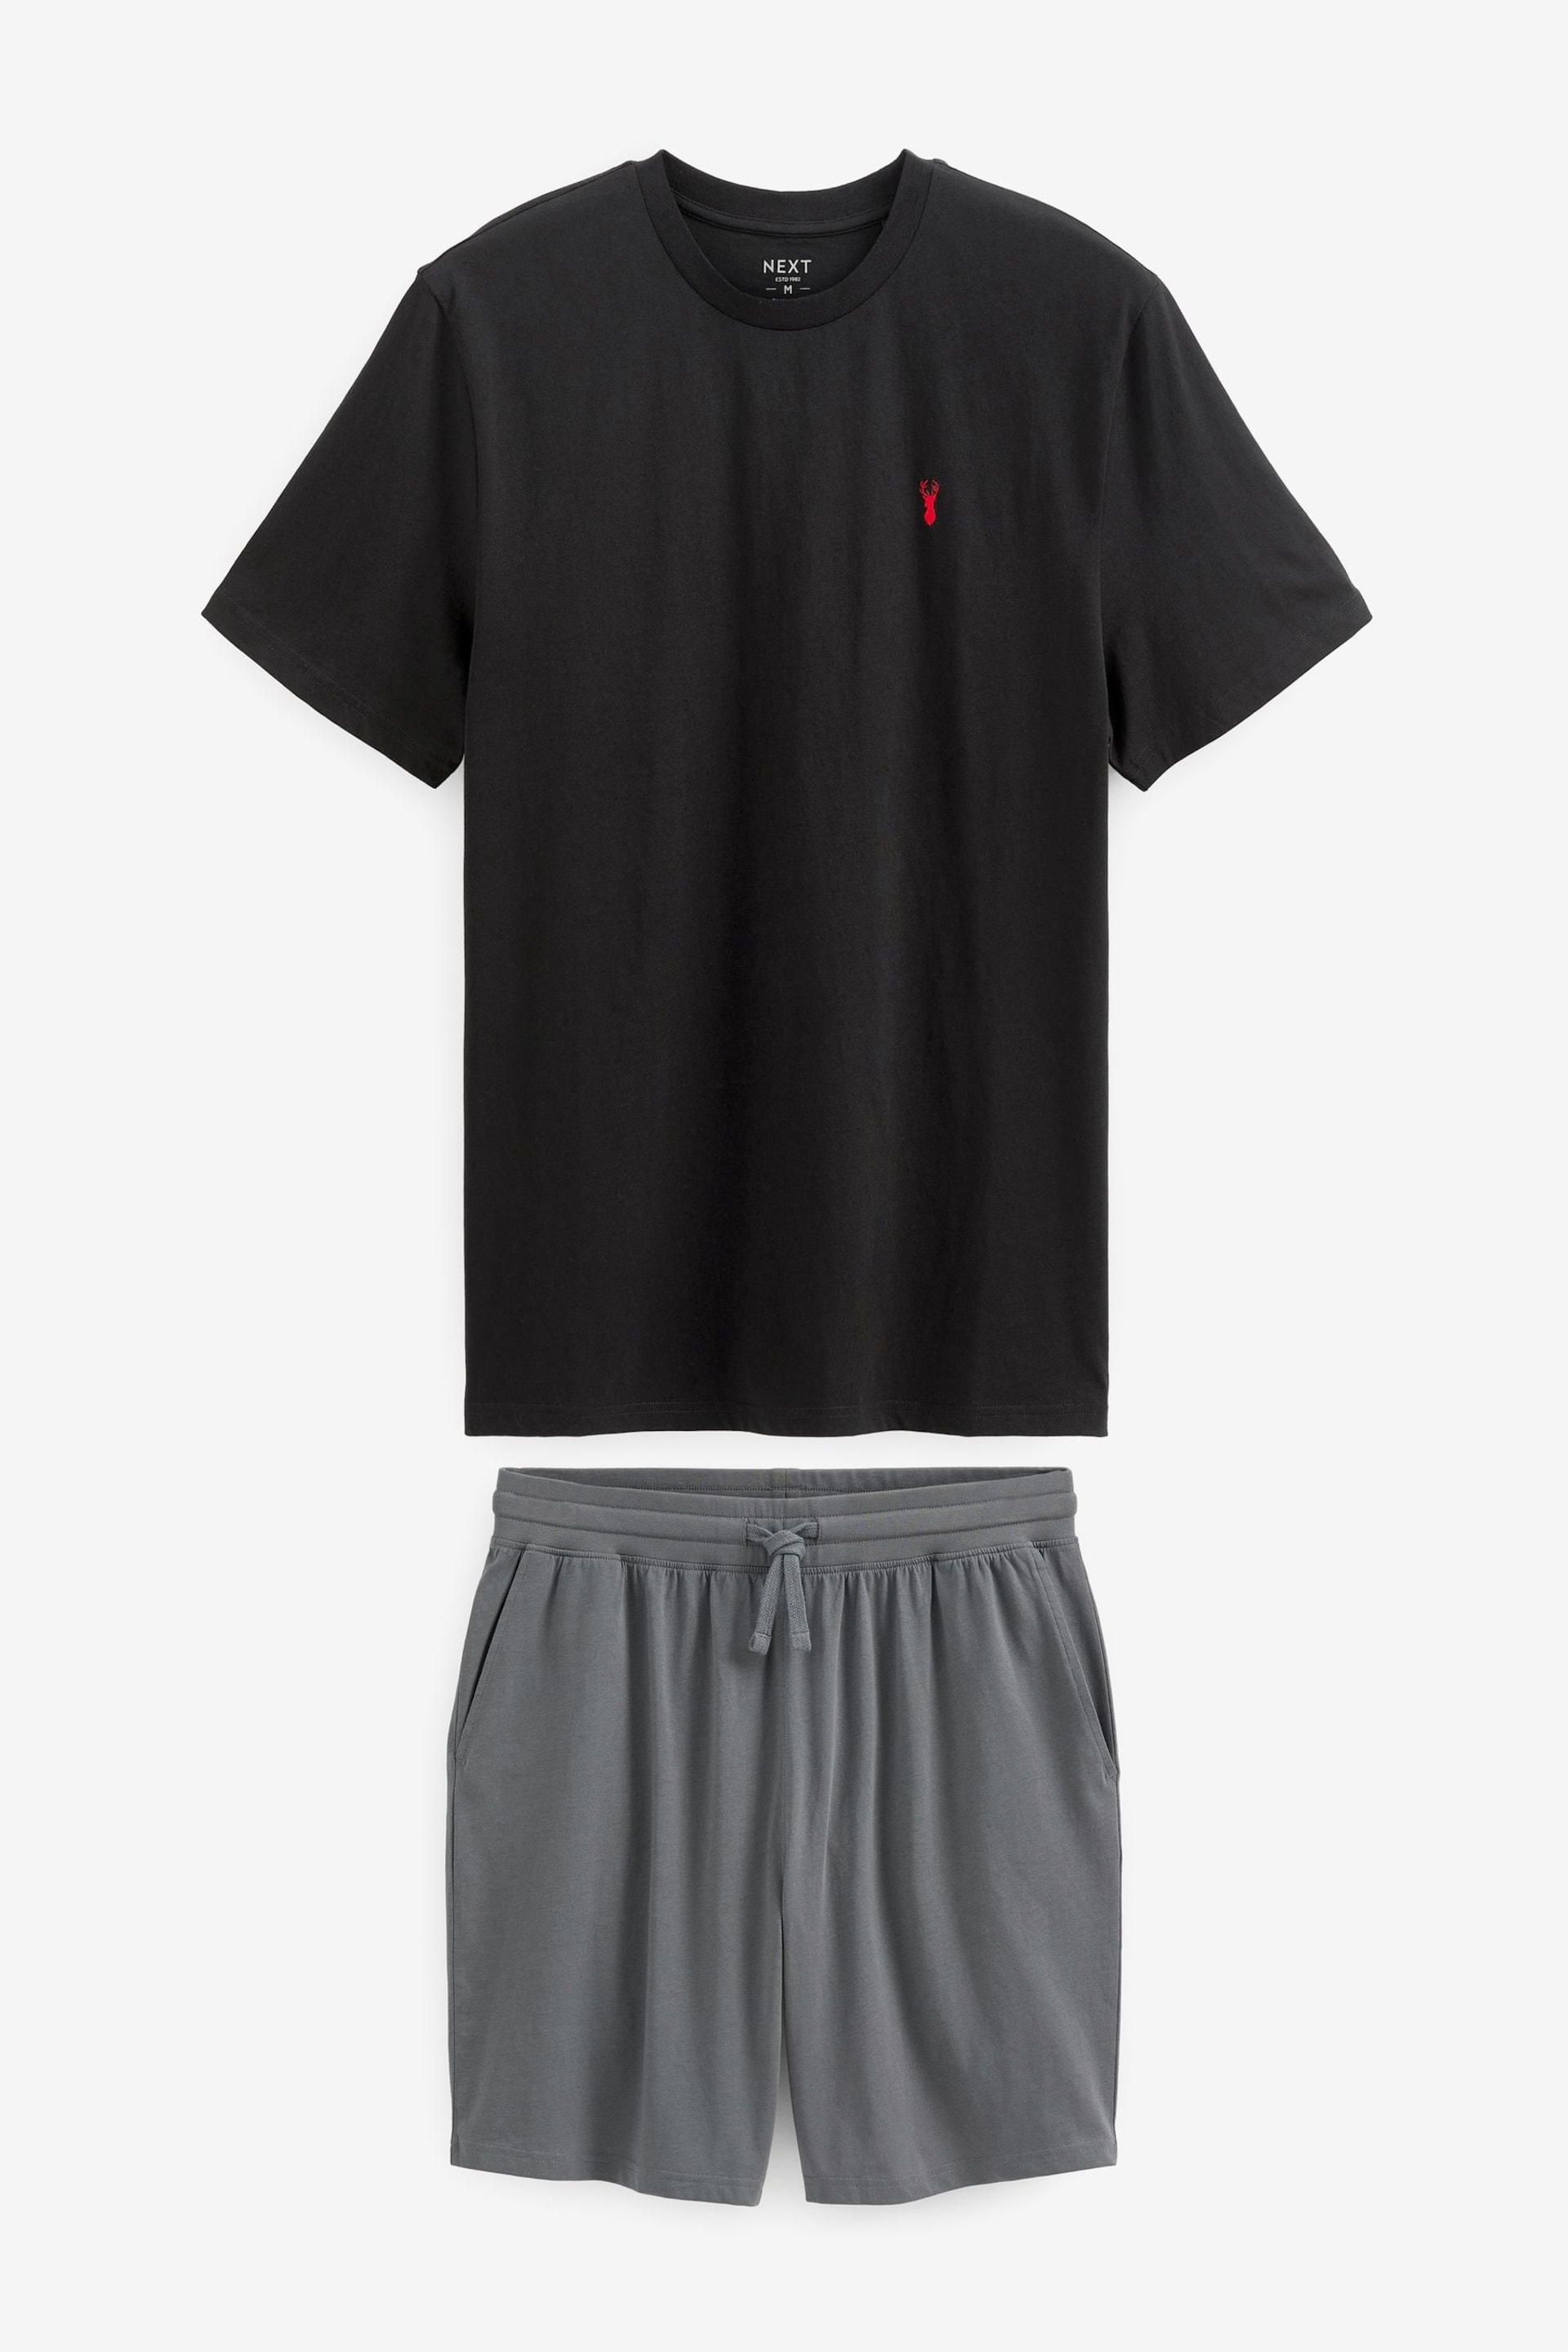 Black/Grey Jersey Pyjama Shorts Set - Image 6 of 8